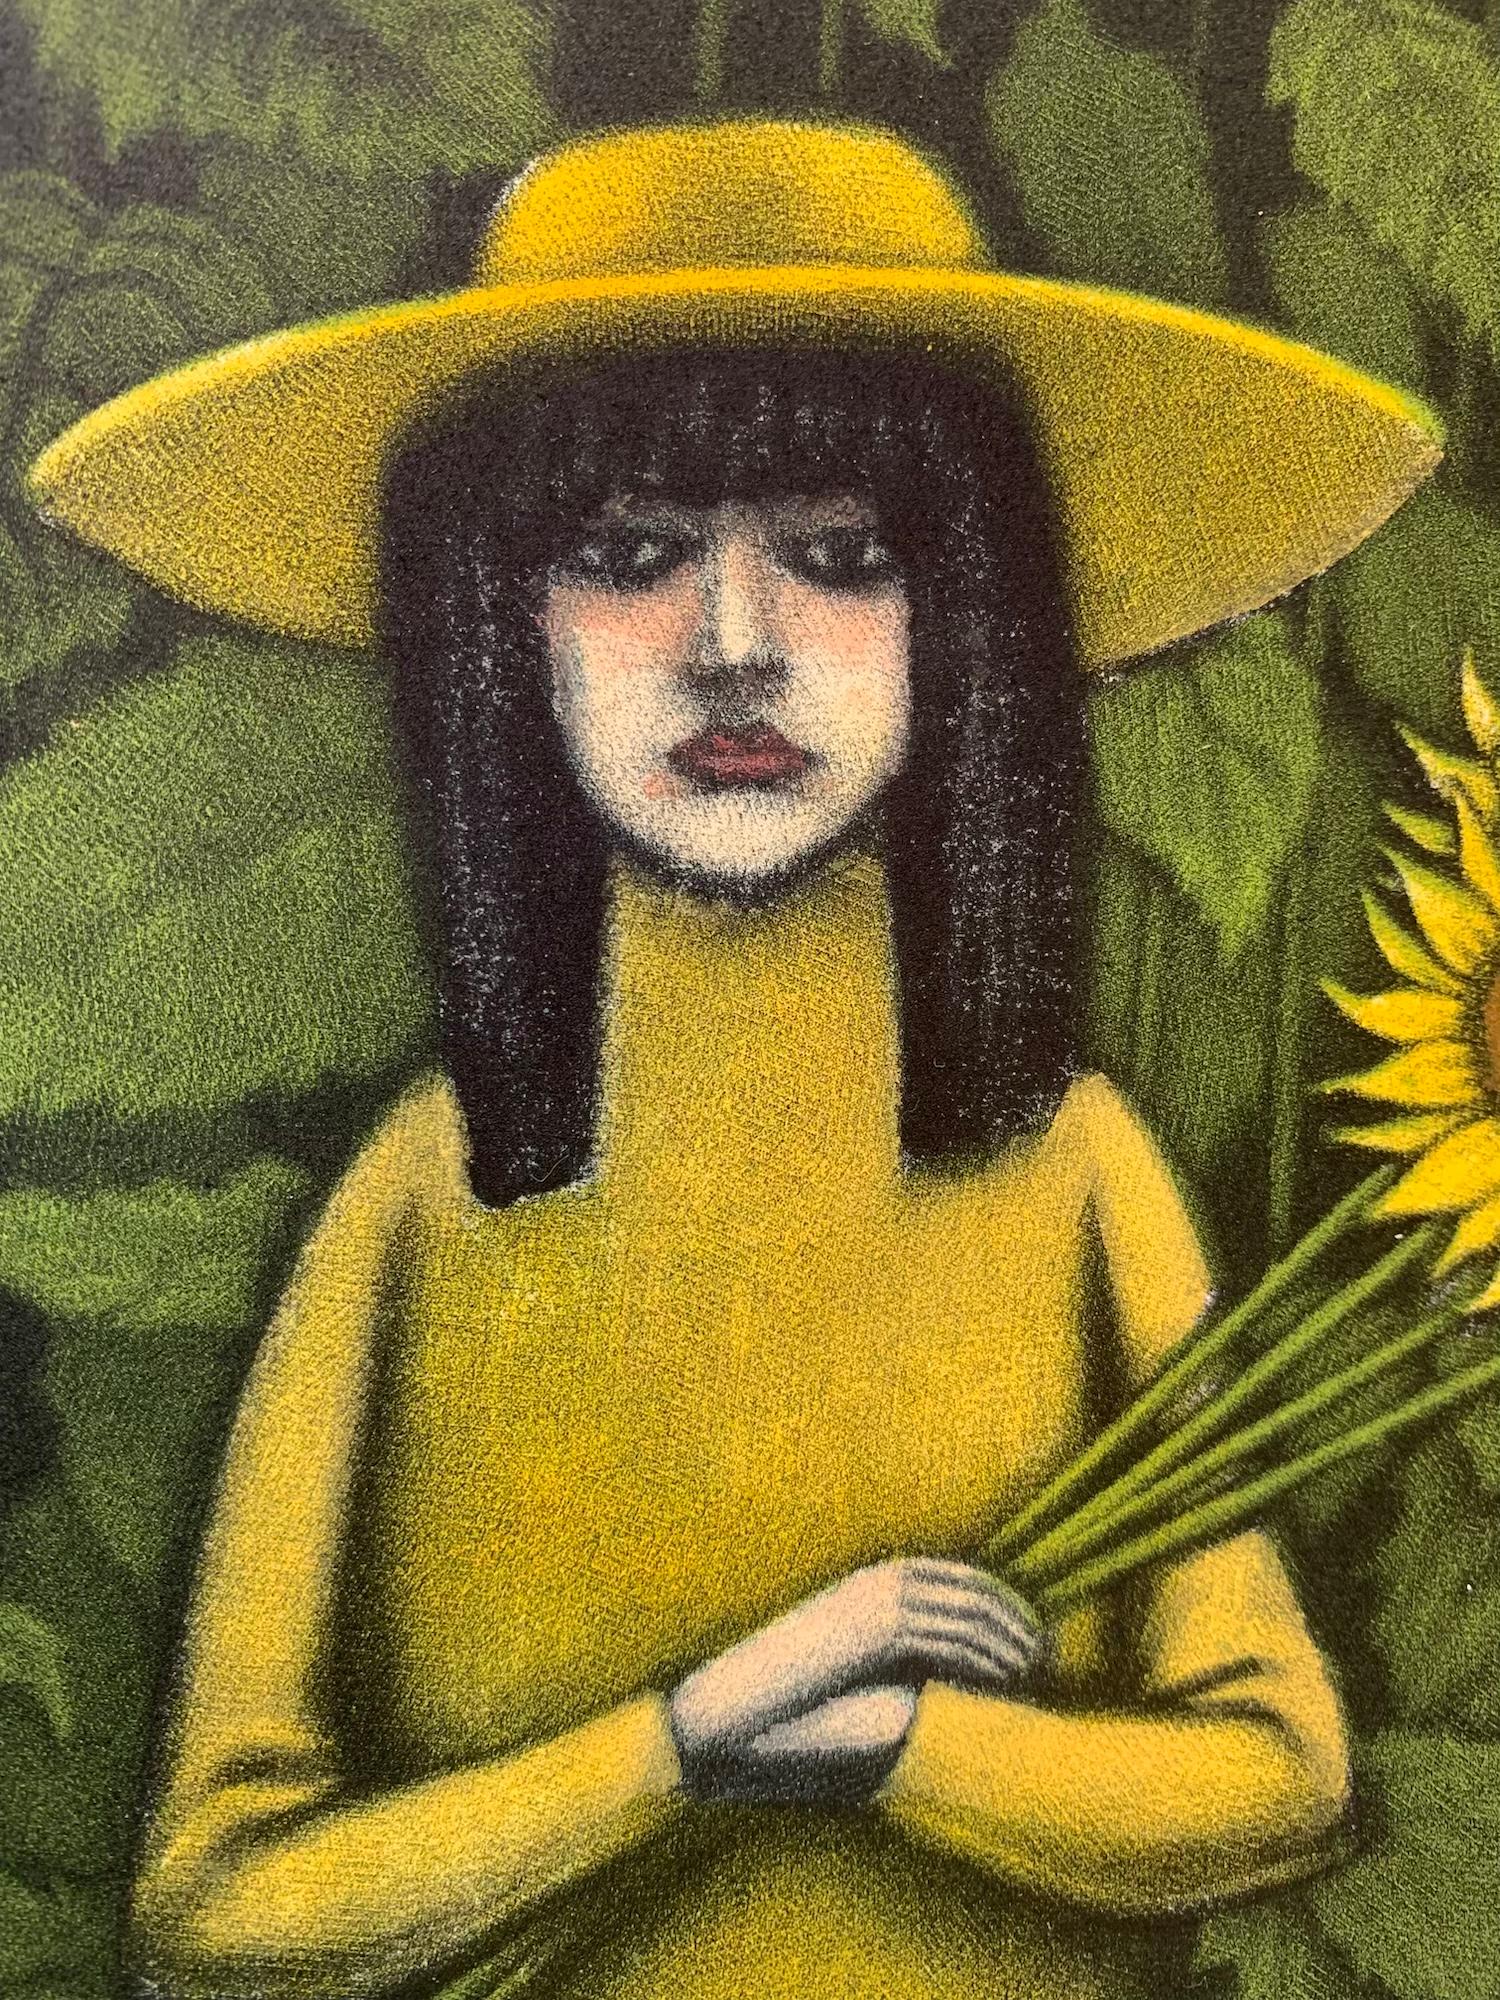 Limitierte Auflage des Bildes einer Frau umgeben von Sonnenblumen.
Kaufen Sie Mychael Barratt Druckgrafik mit Wychwood Art Gallery online. Mychael Barratt wurde in Toronto, Kanada, geboren, betrachtet sich aber als Londoner, seit er vor dreißig